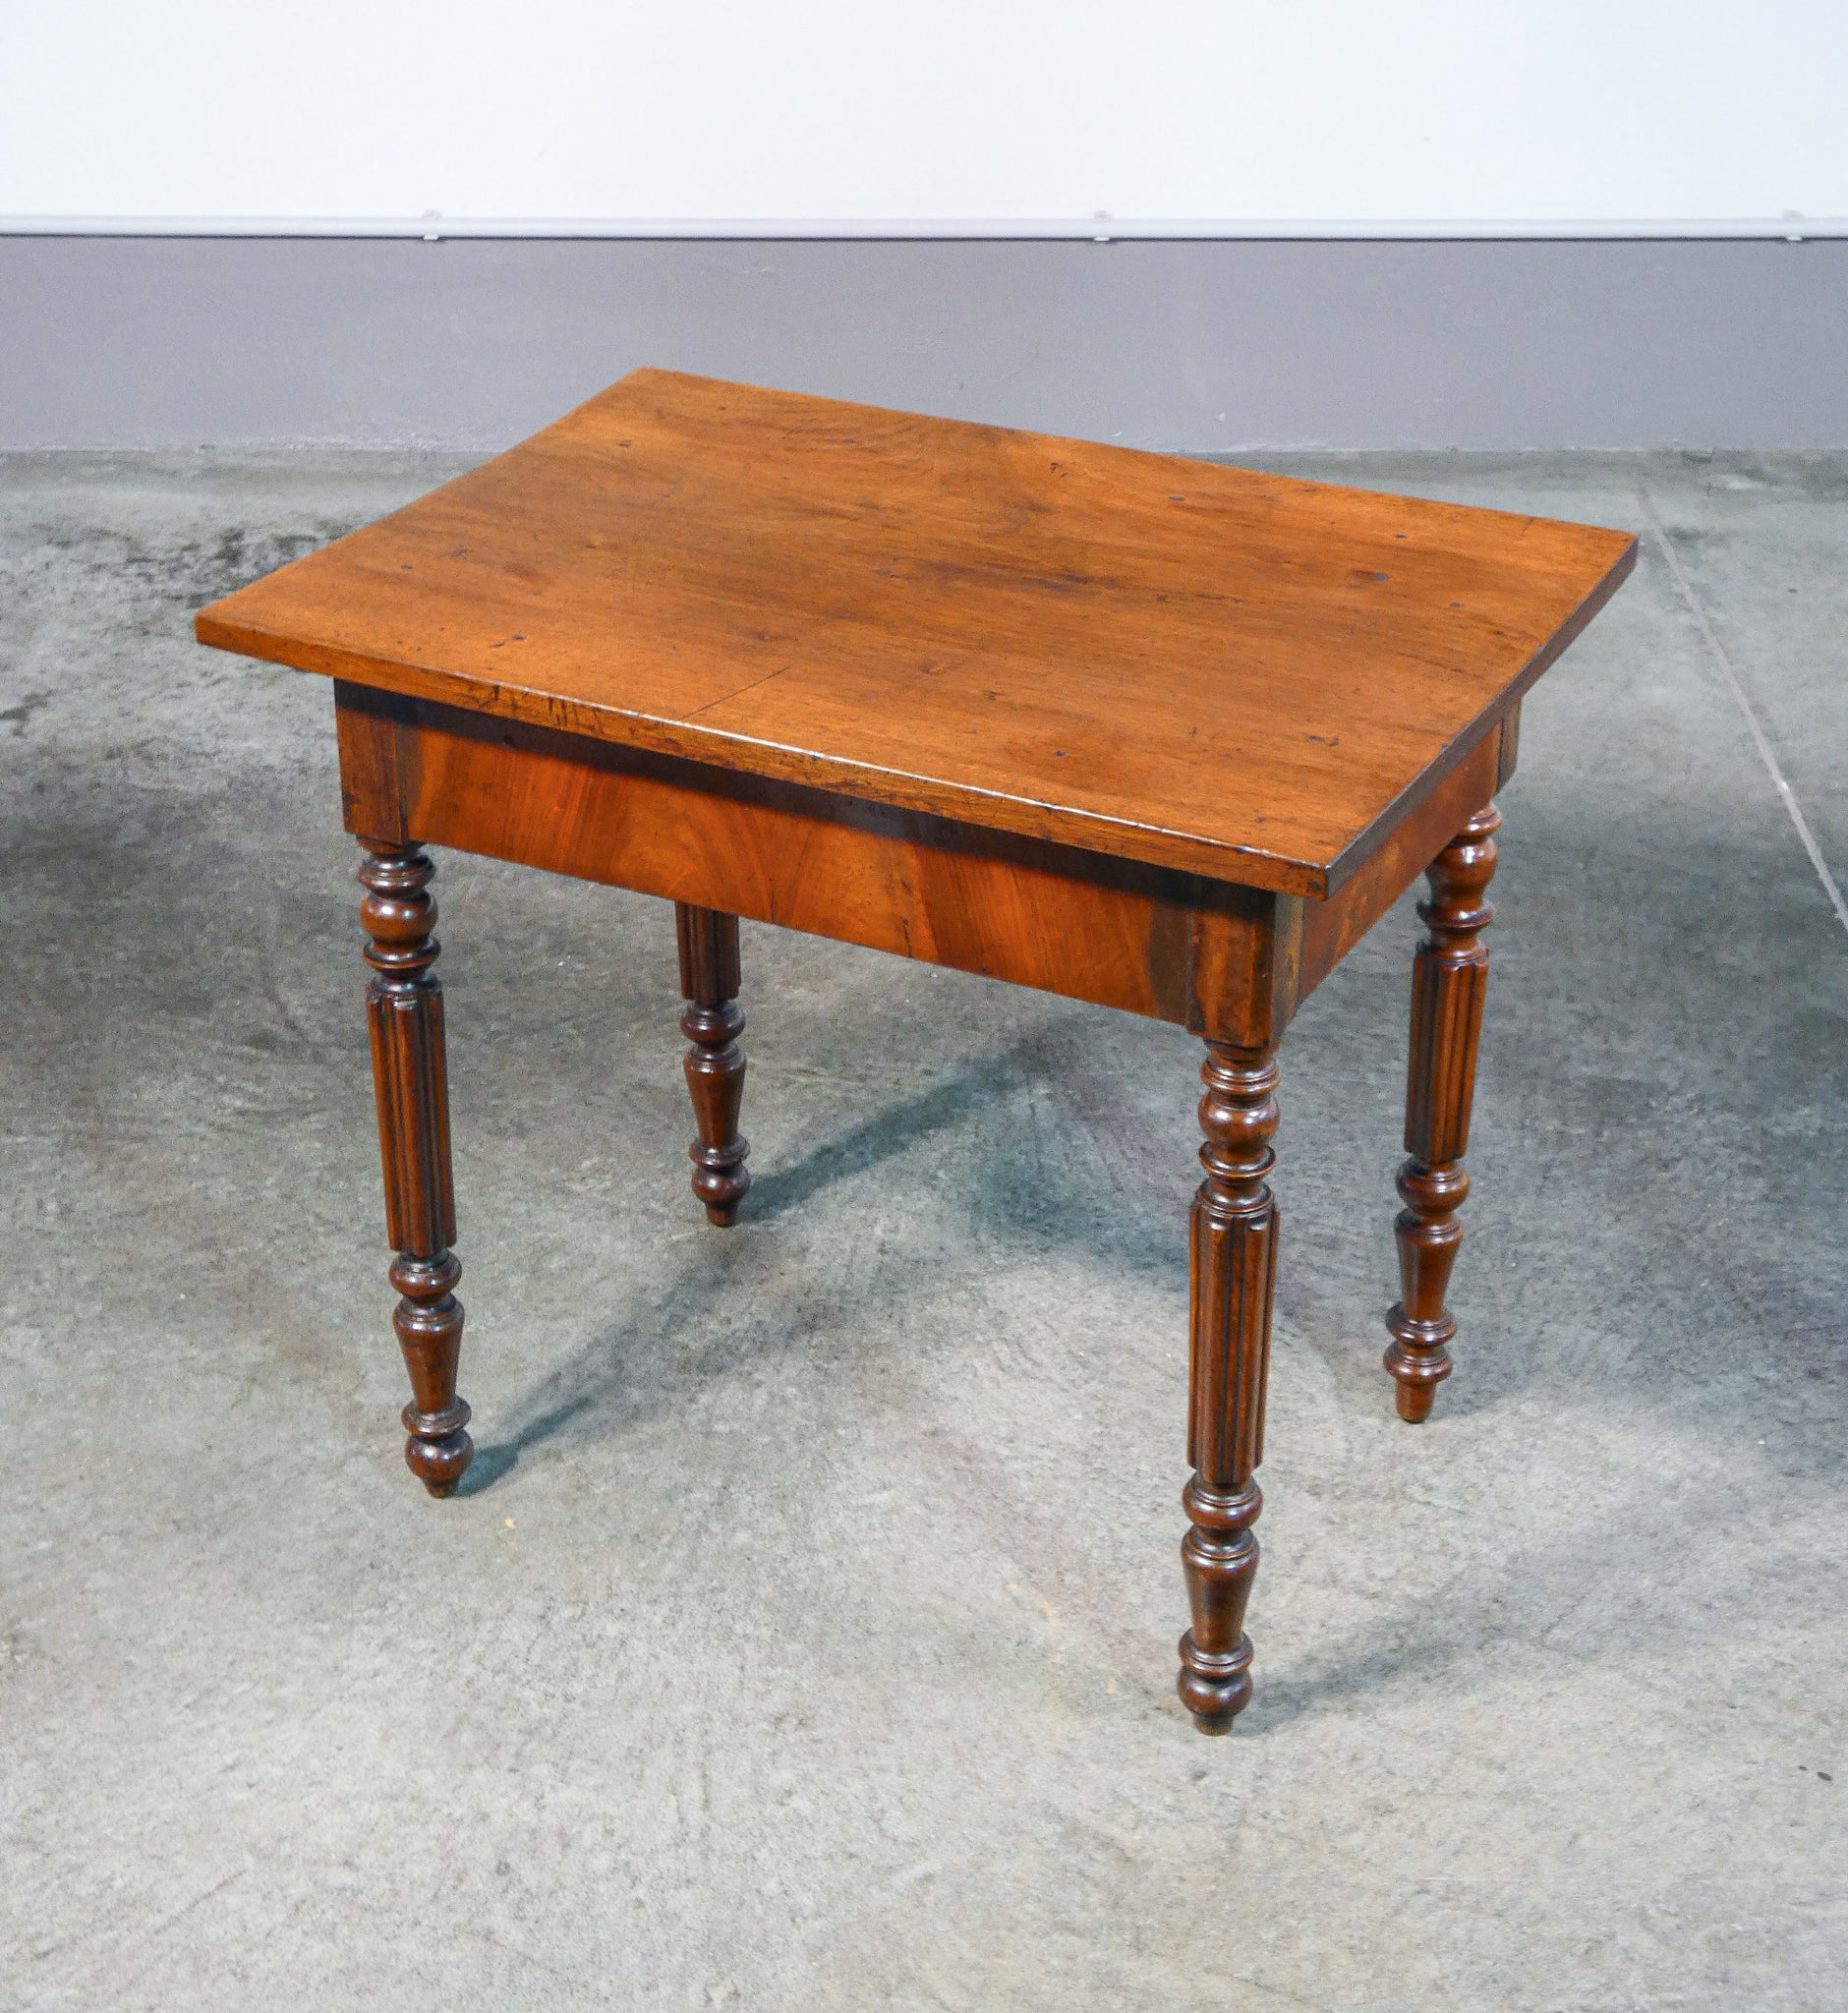 tavolino basso carlo x legno massello noce epoca 1800 salotto tavolo antico